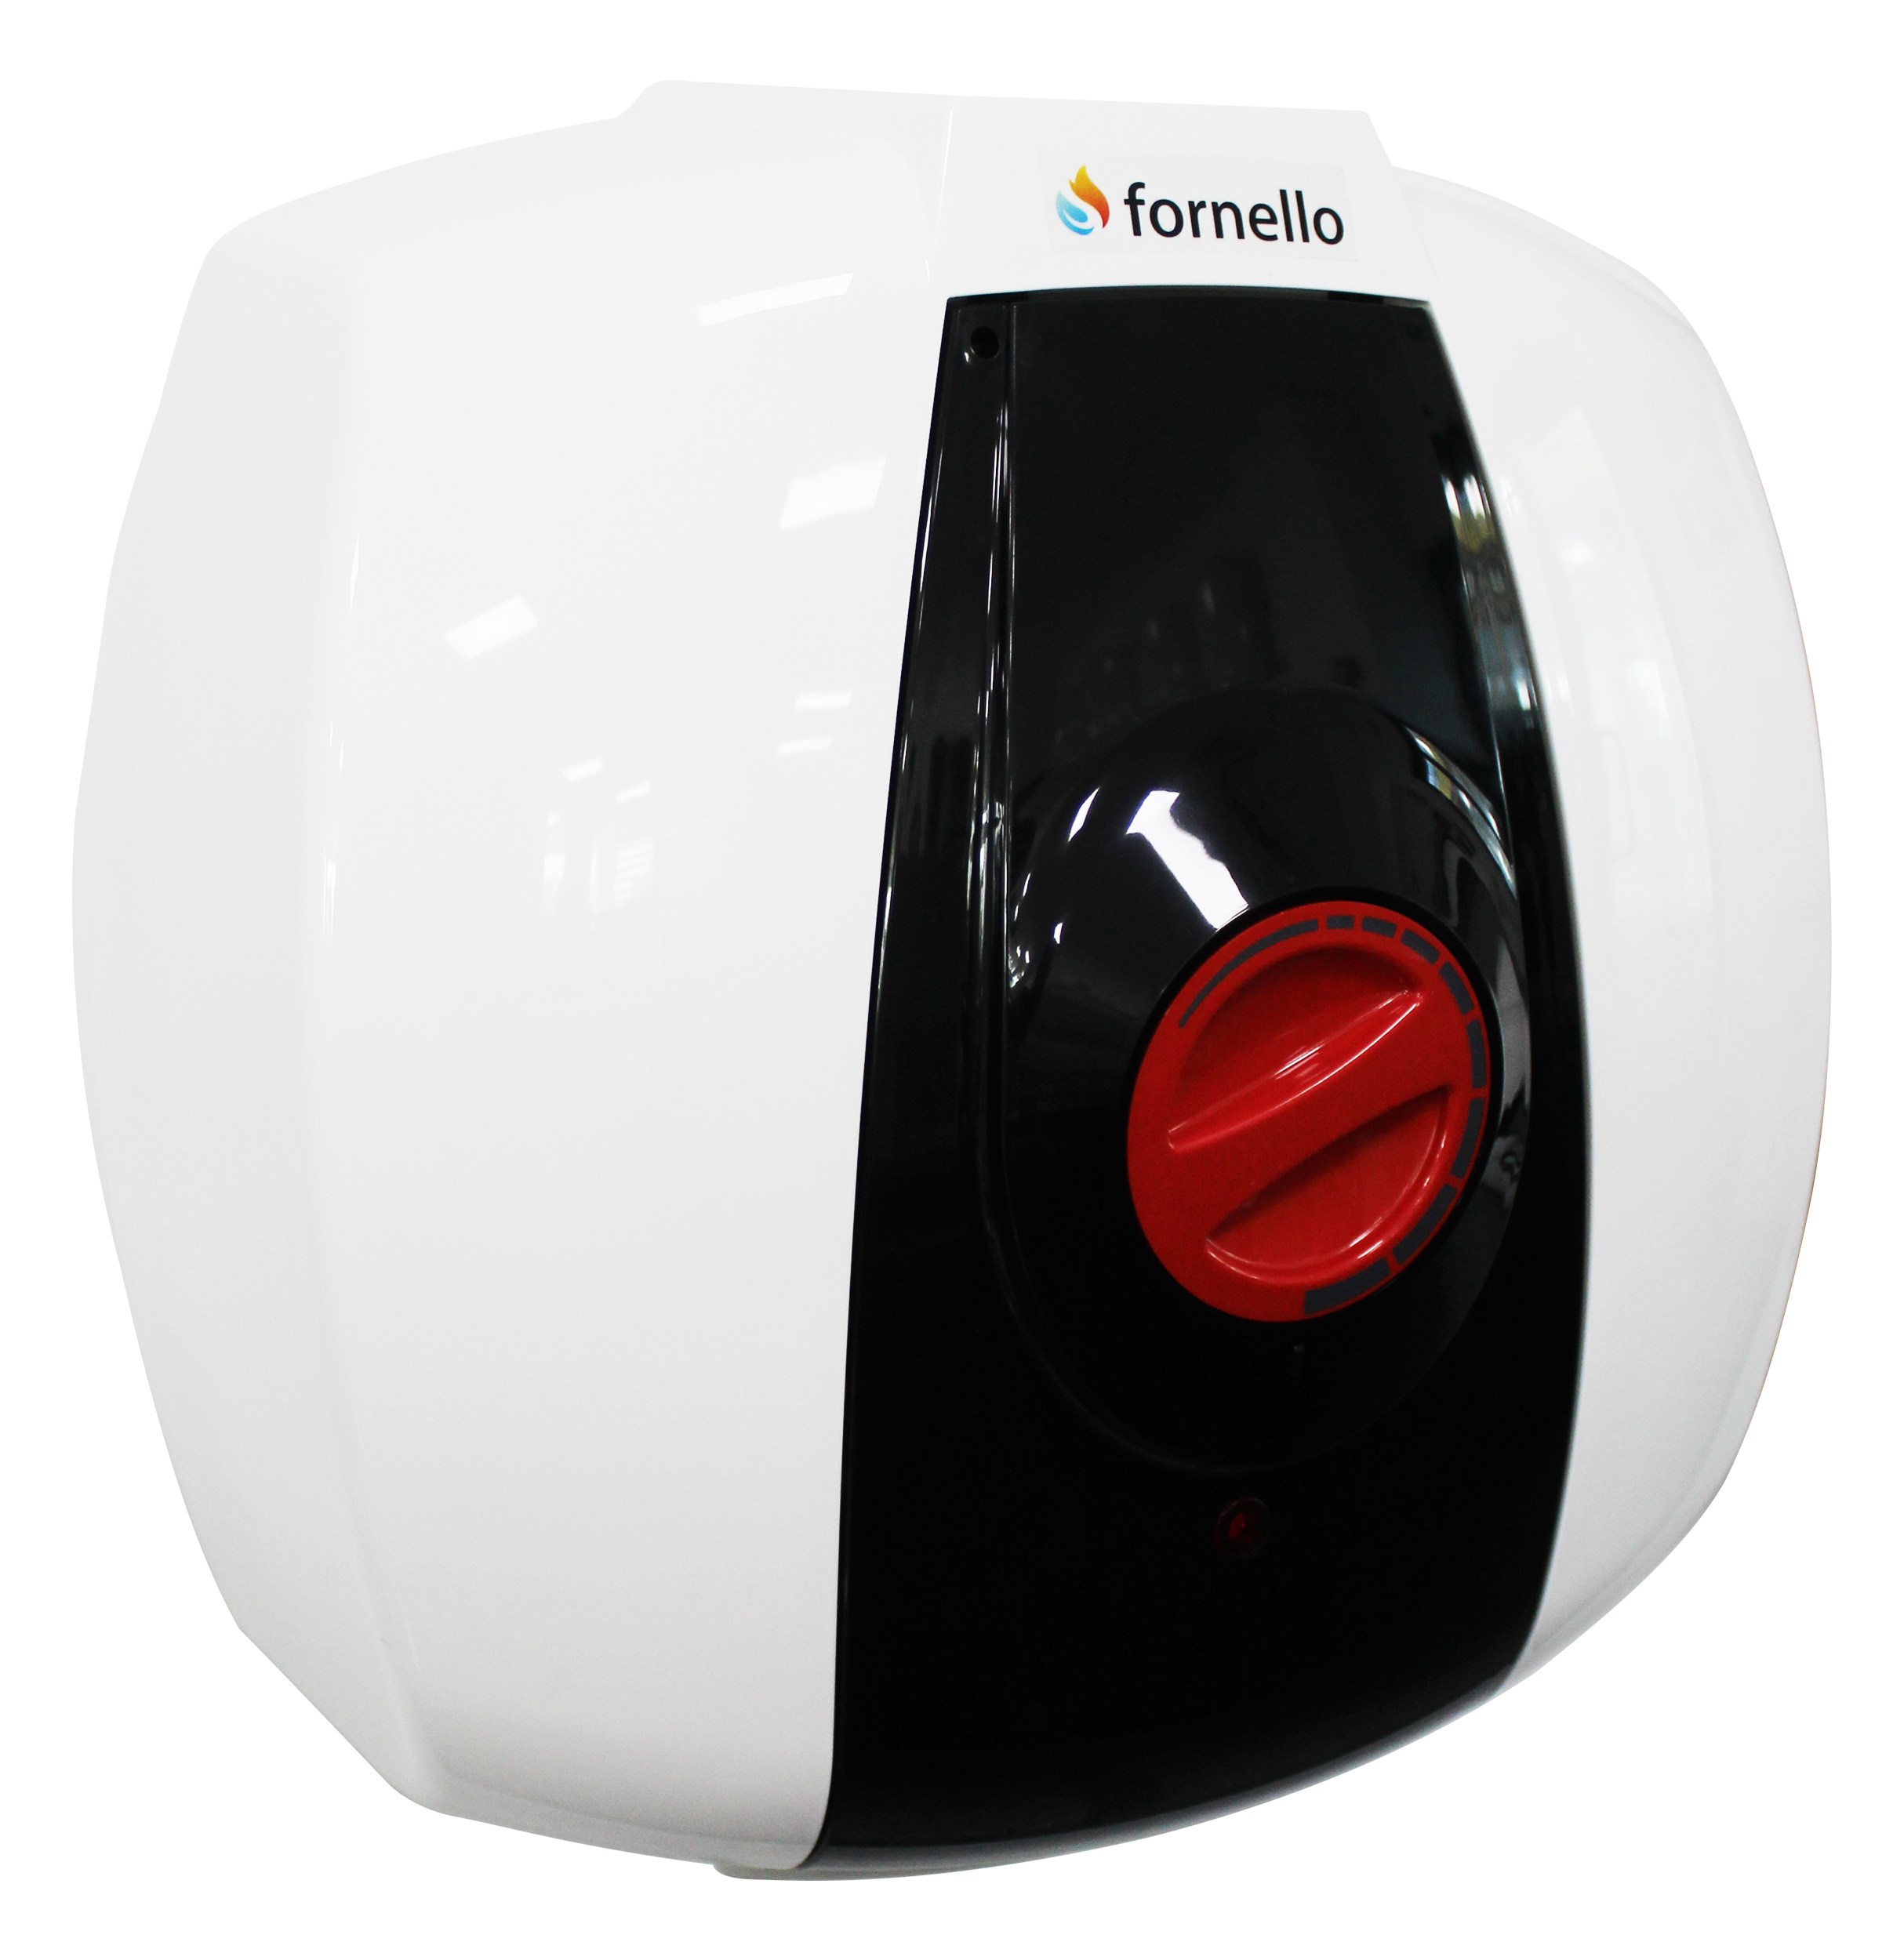 Boiler electric Fornello Optima GCA 1015 M54 RC, 1500 W, 10 l, 0.9 Mpa, Termostat reglabil, Montare deasupra chiuvetei, Alb Fornello imagine 2022